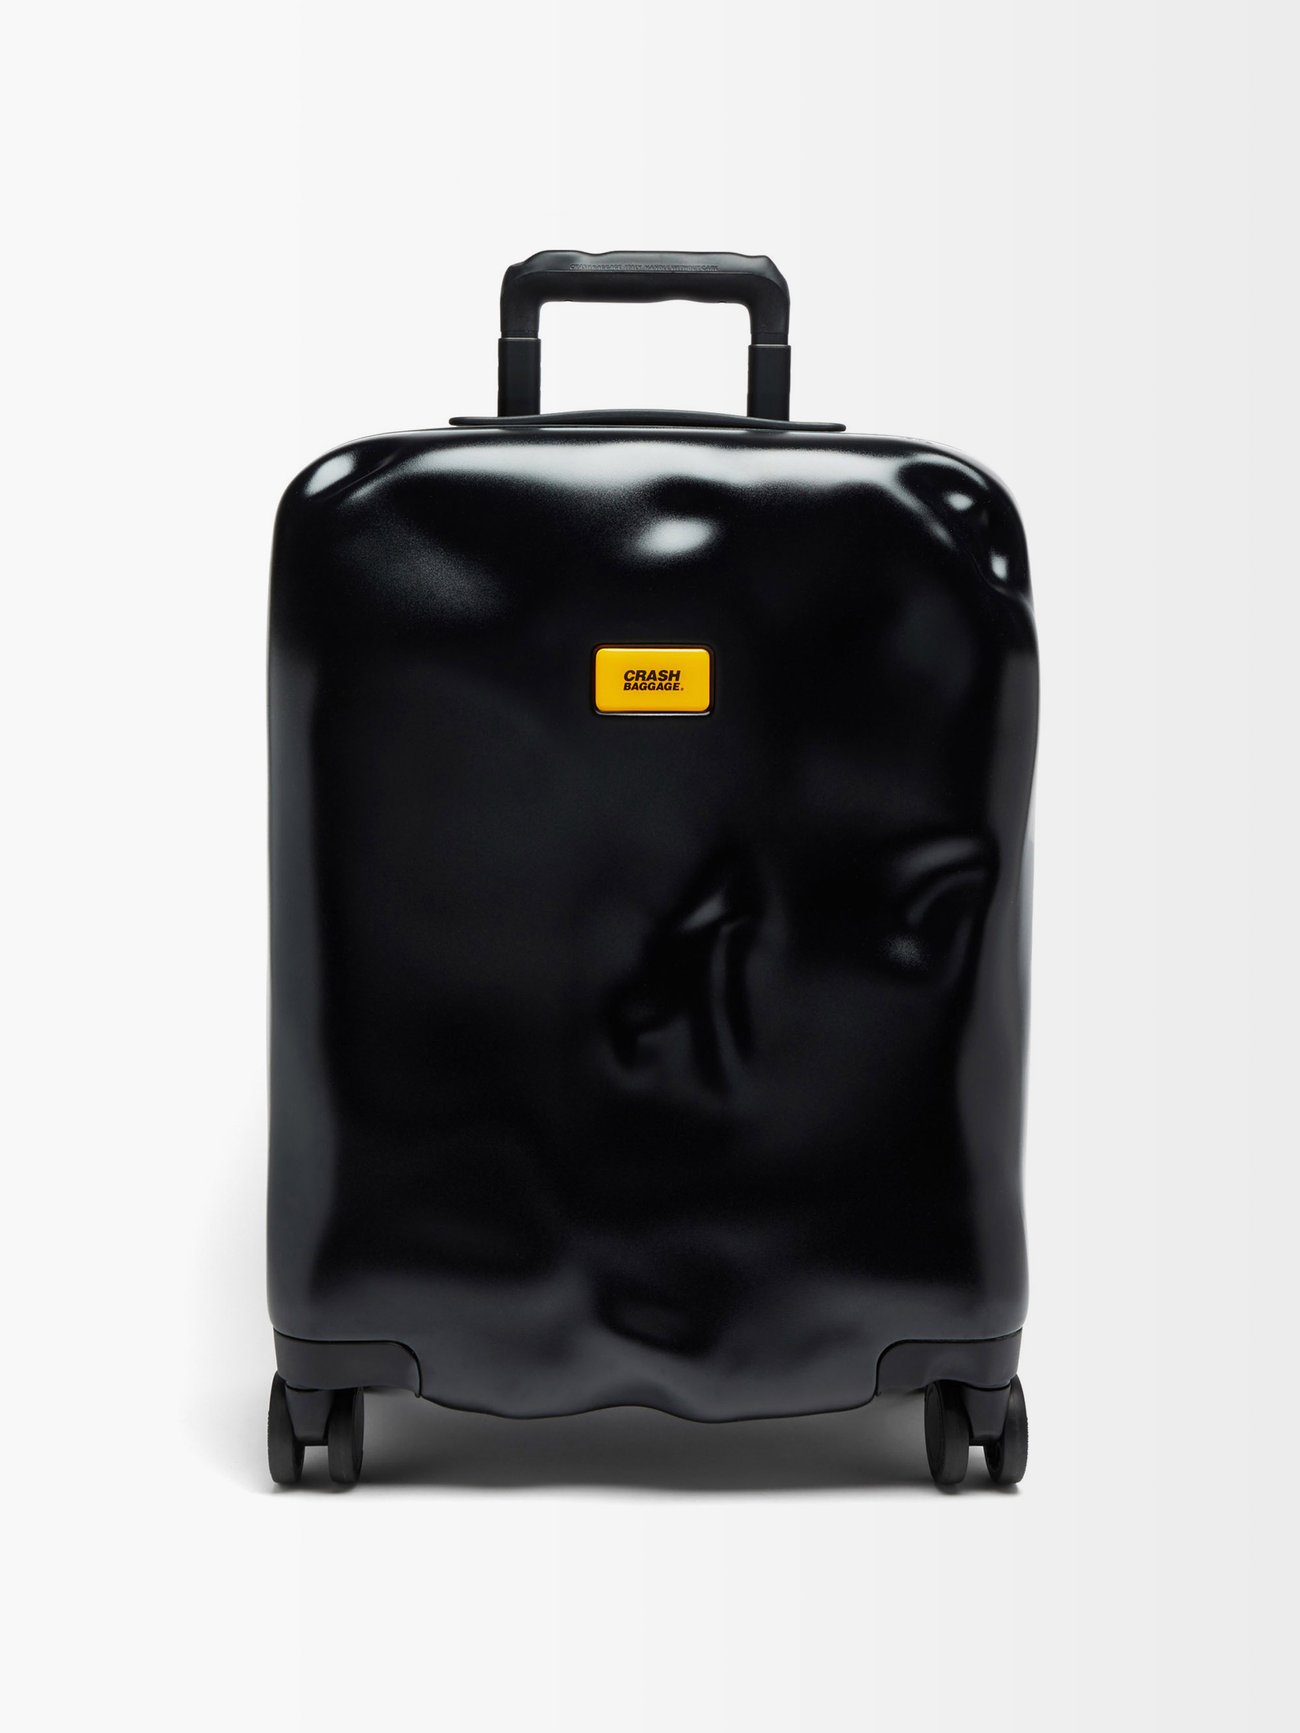 Black Icon 55cm cabin suitcase, Crash Baggage